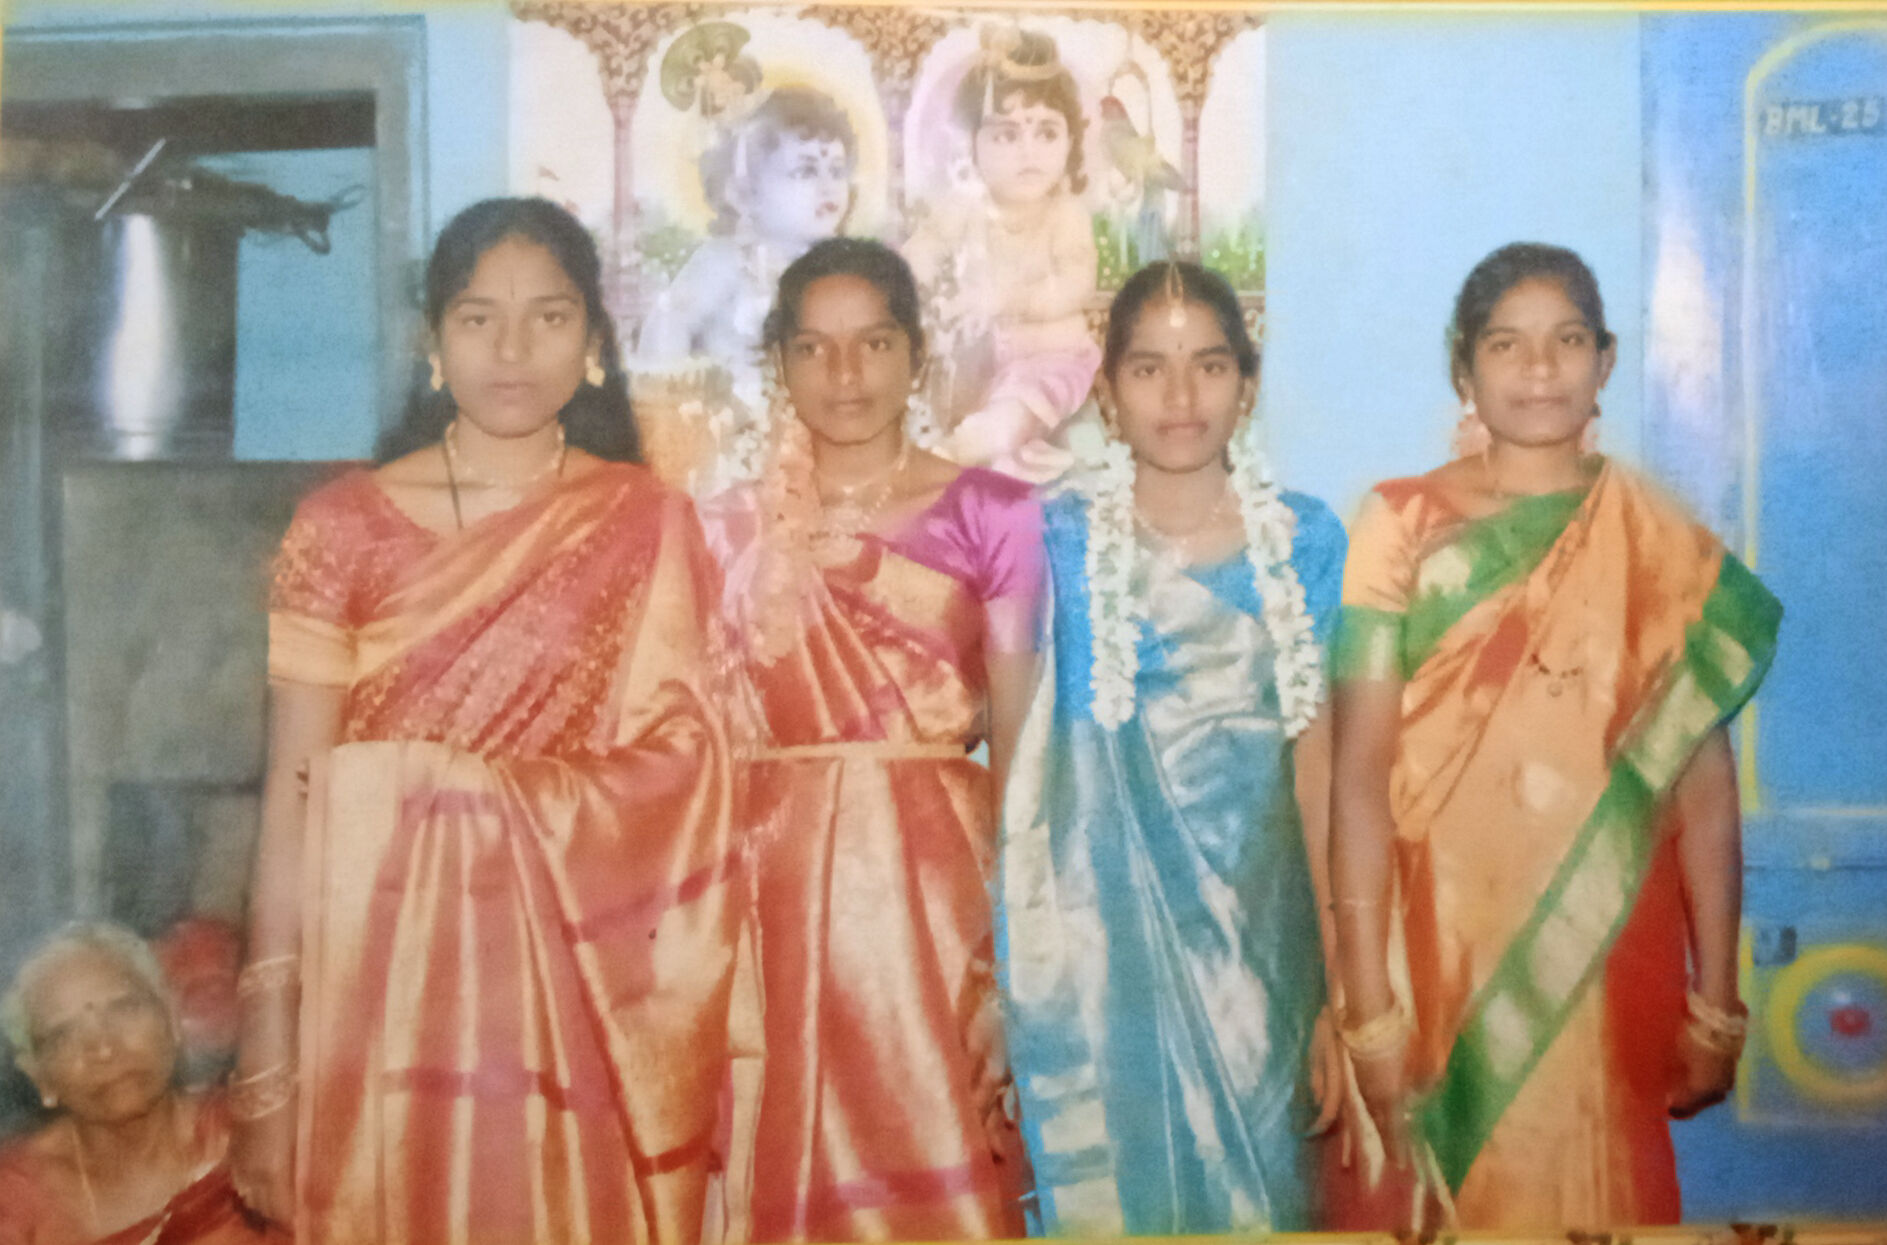 My mom sisters
1. 2nd daughter : Anusuya
2.4th daughter : Bhagya lakshmi
3.3rd daughter : Tulasi
4.my mom 1st daughter :❤️ Anitha lakshmi